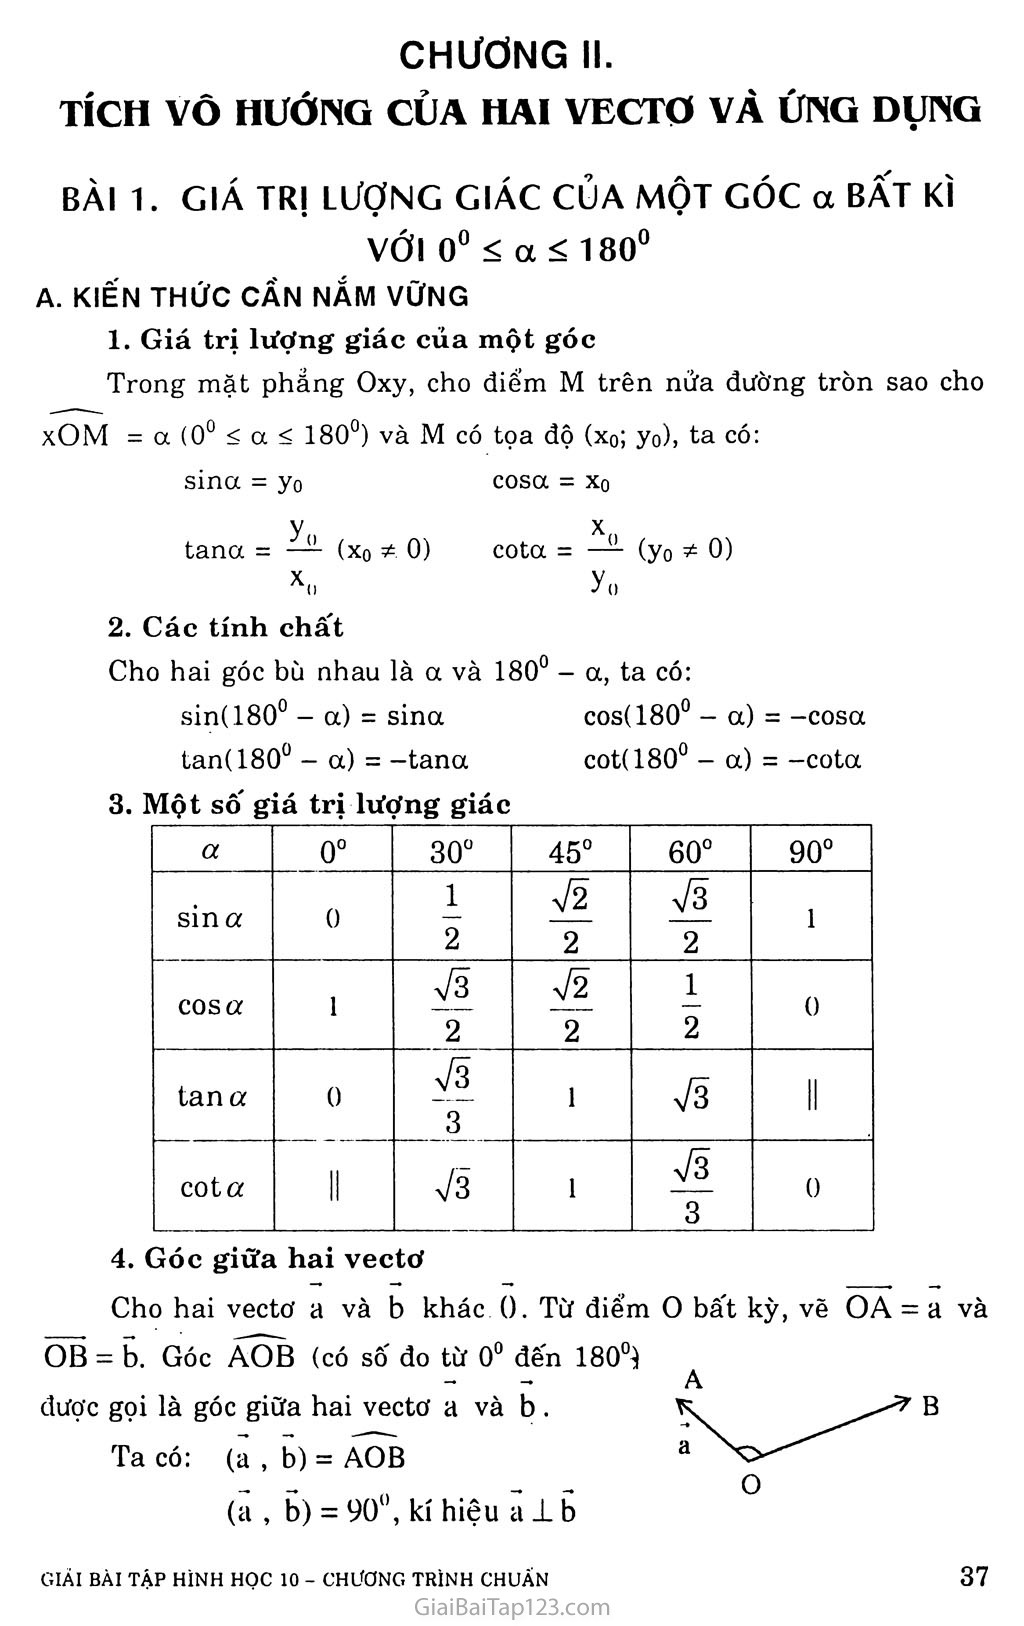 Bài 1. Giá trị lượng giác của một góc a bất kì với 0° < a <180° trang 1